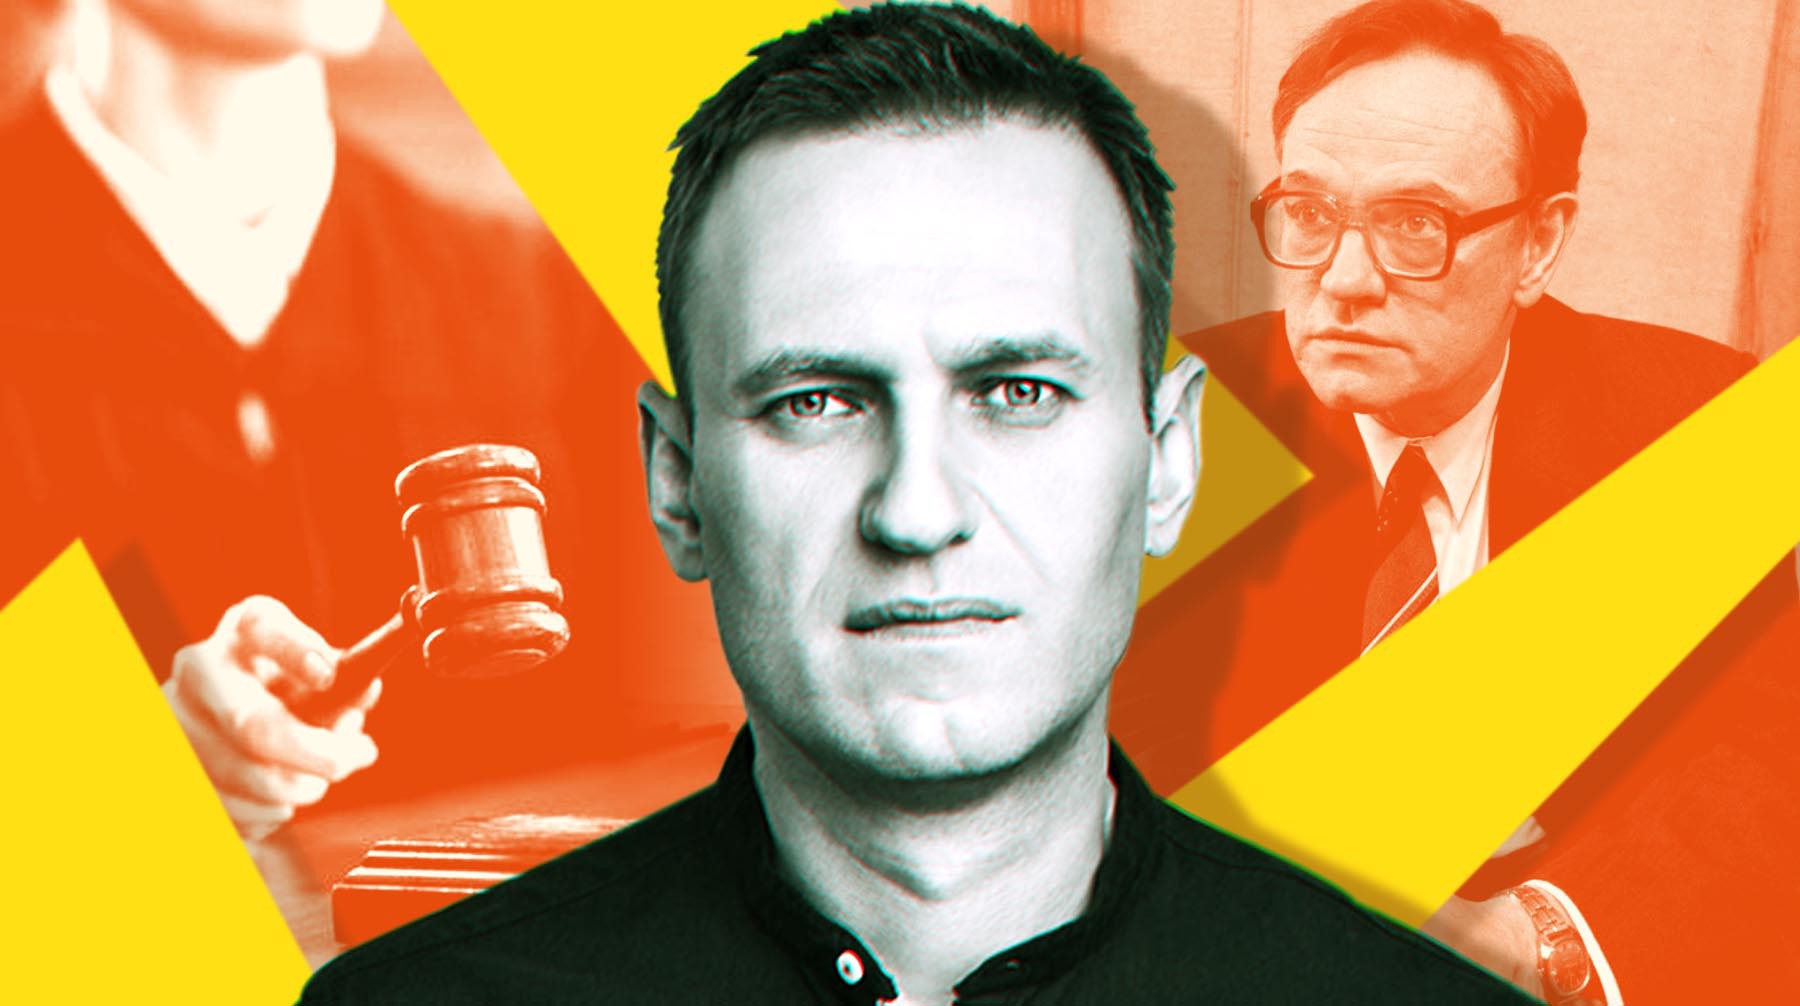 Dailystorm - Адвокат Навального закончил выступление в суде цитатой из сериала «Чернобыль»